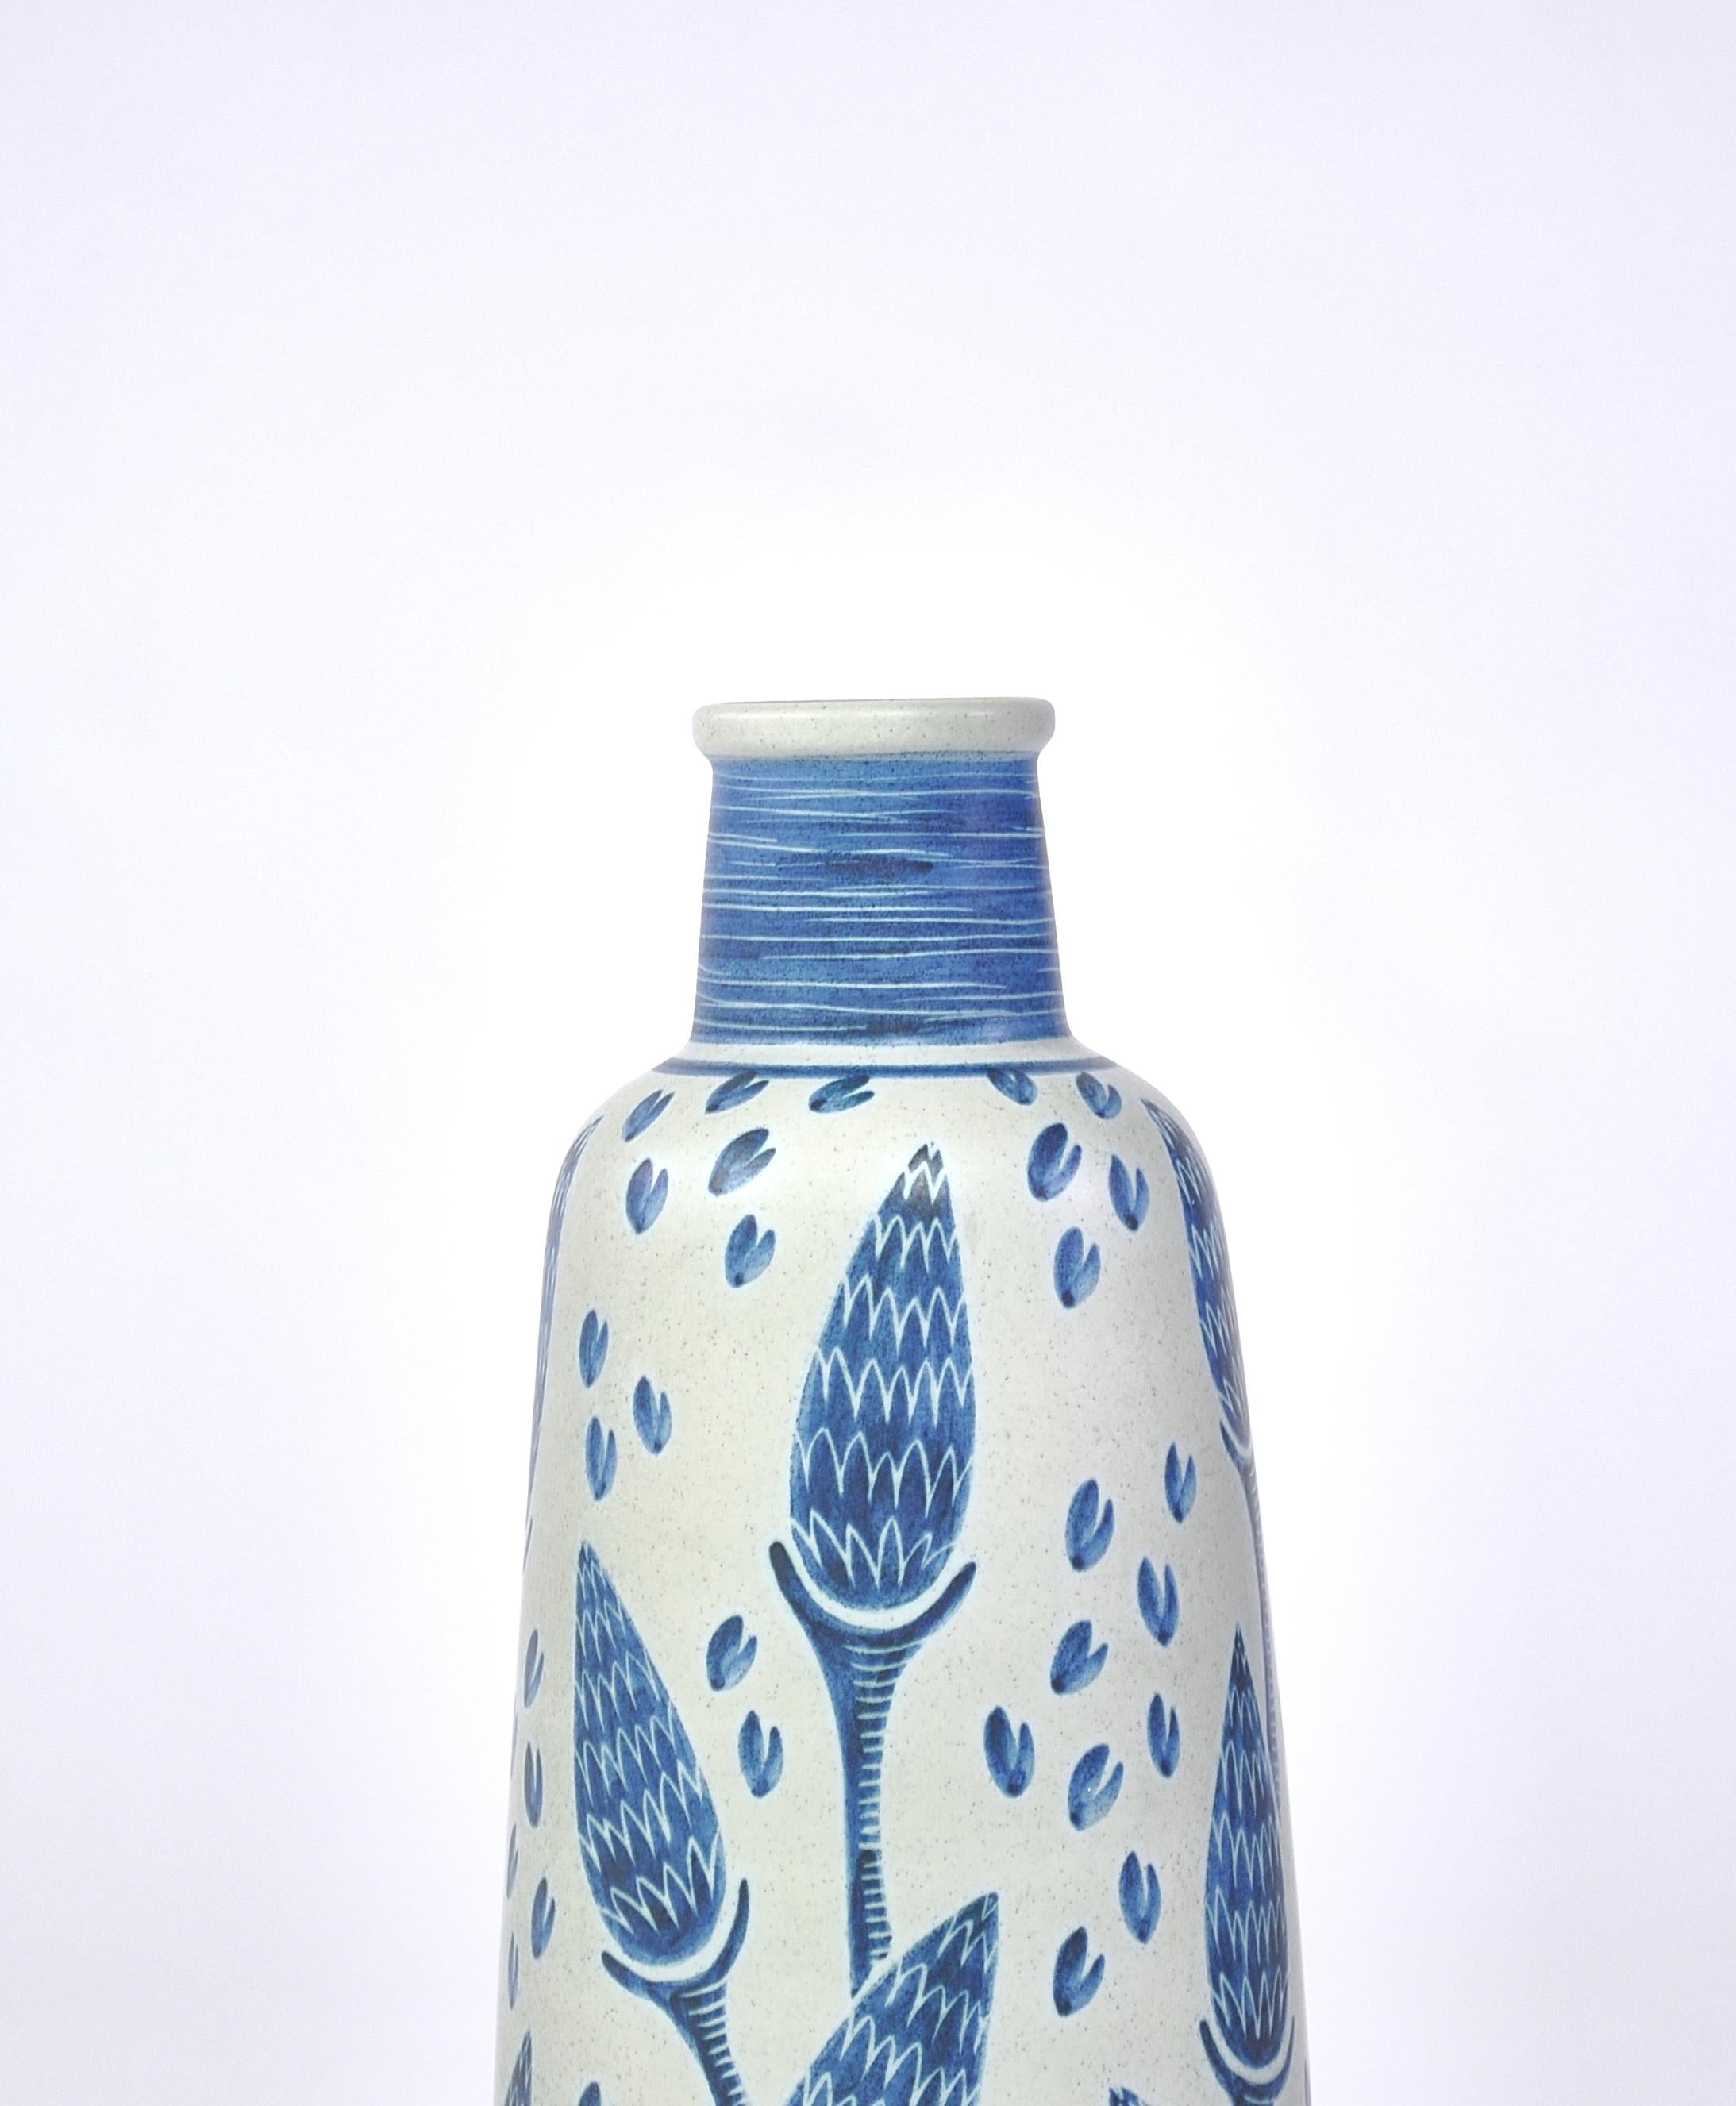 Scandinavian Modern Blue Ceramic Floor Vase by Rigmor Nielsen for Søholm, 1960s, Danish Modern 